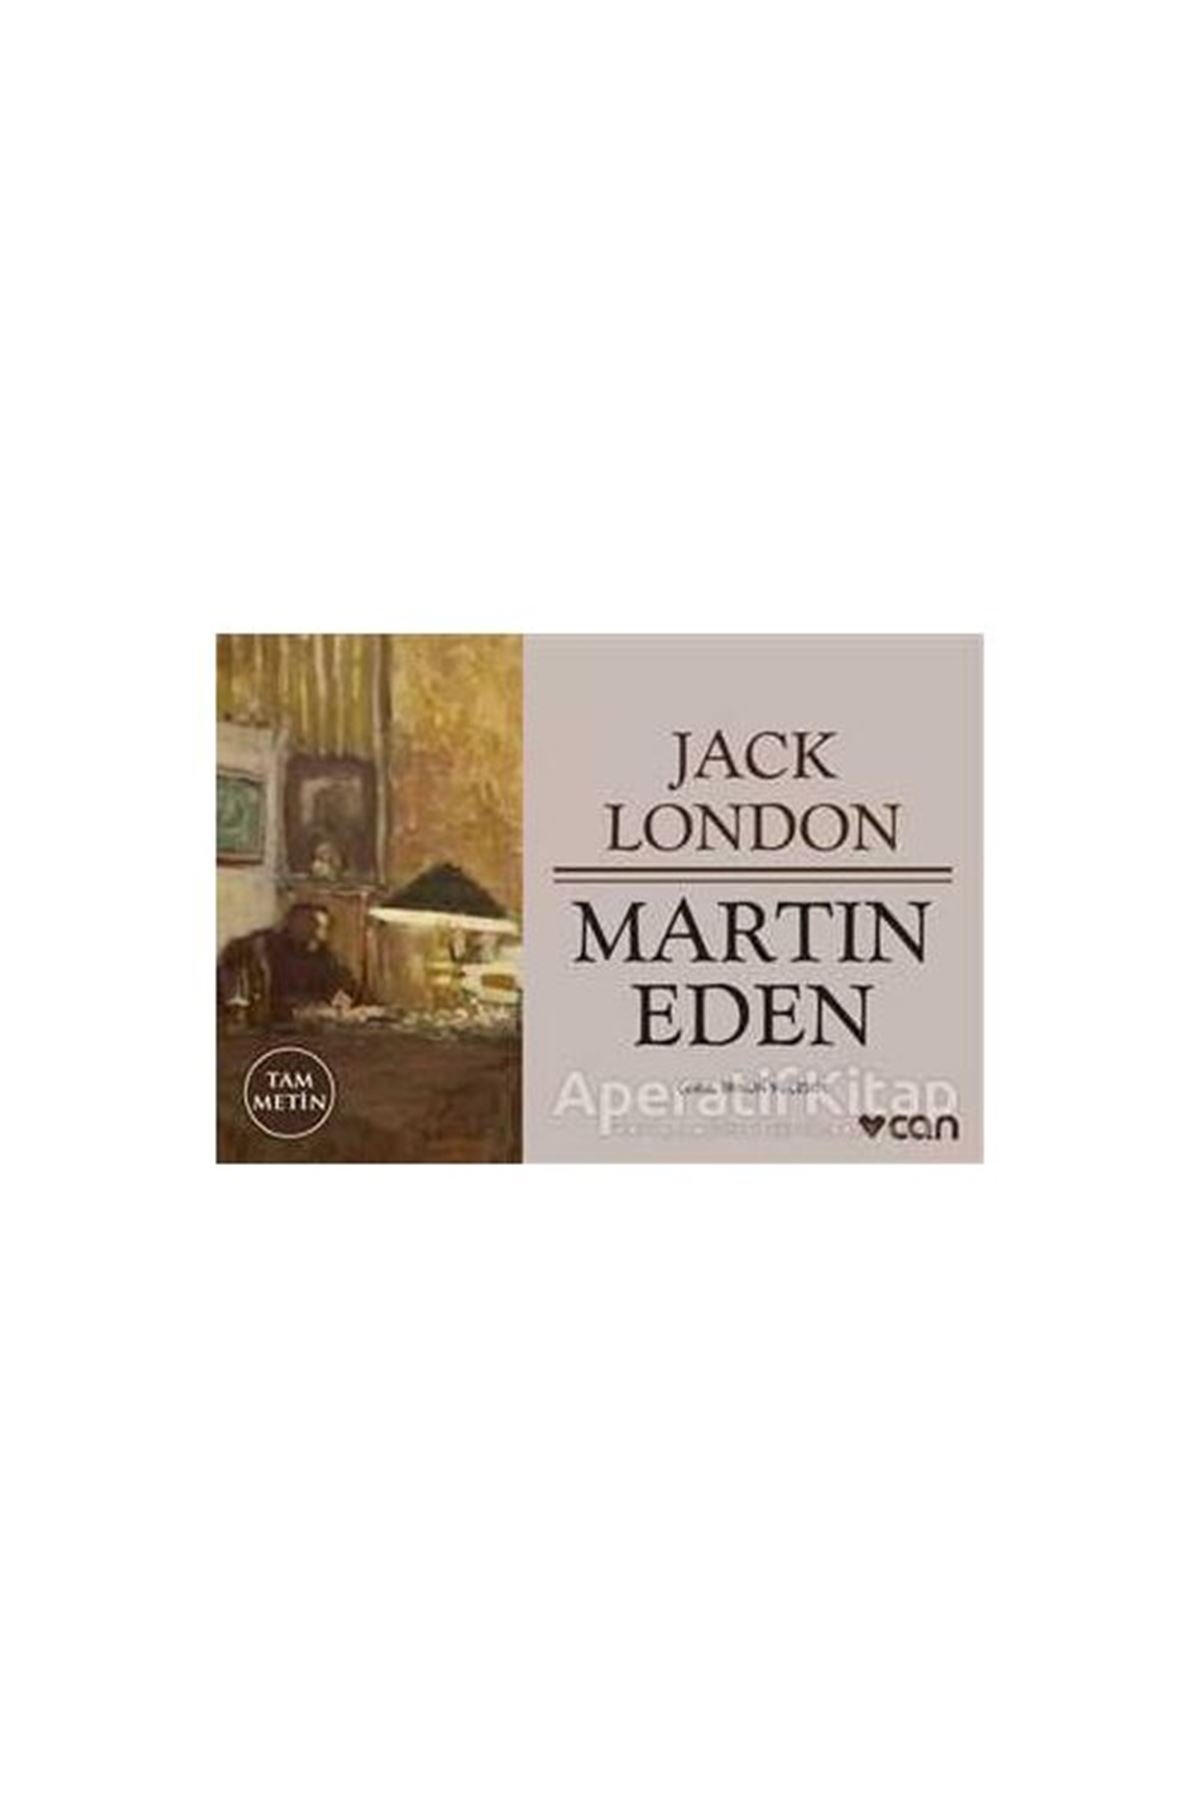 JACK LONDON - MARTİN EDEN